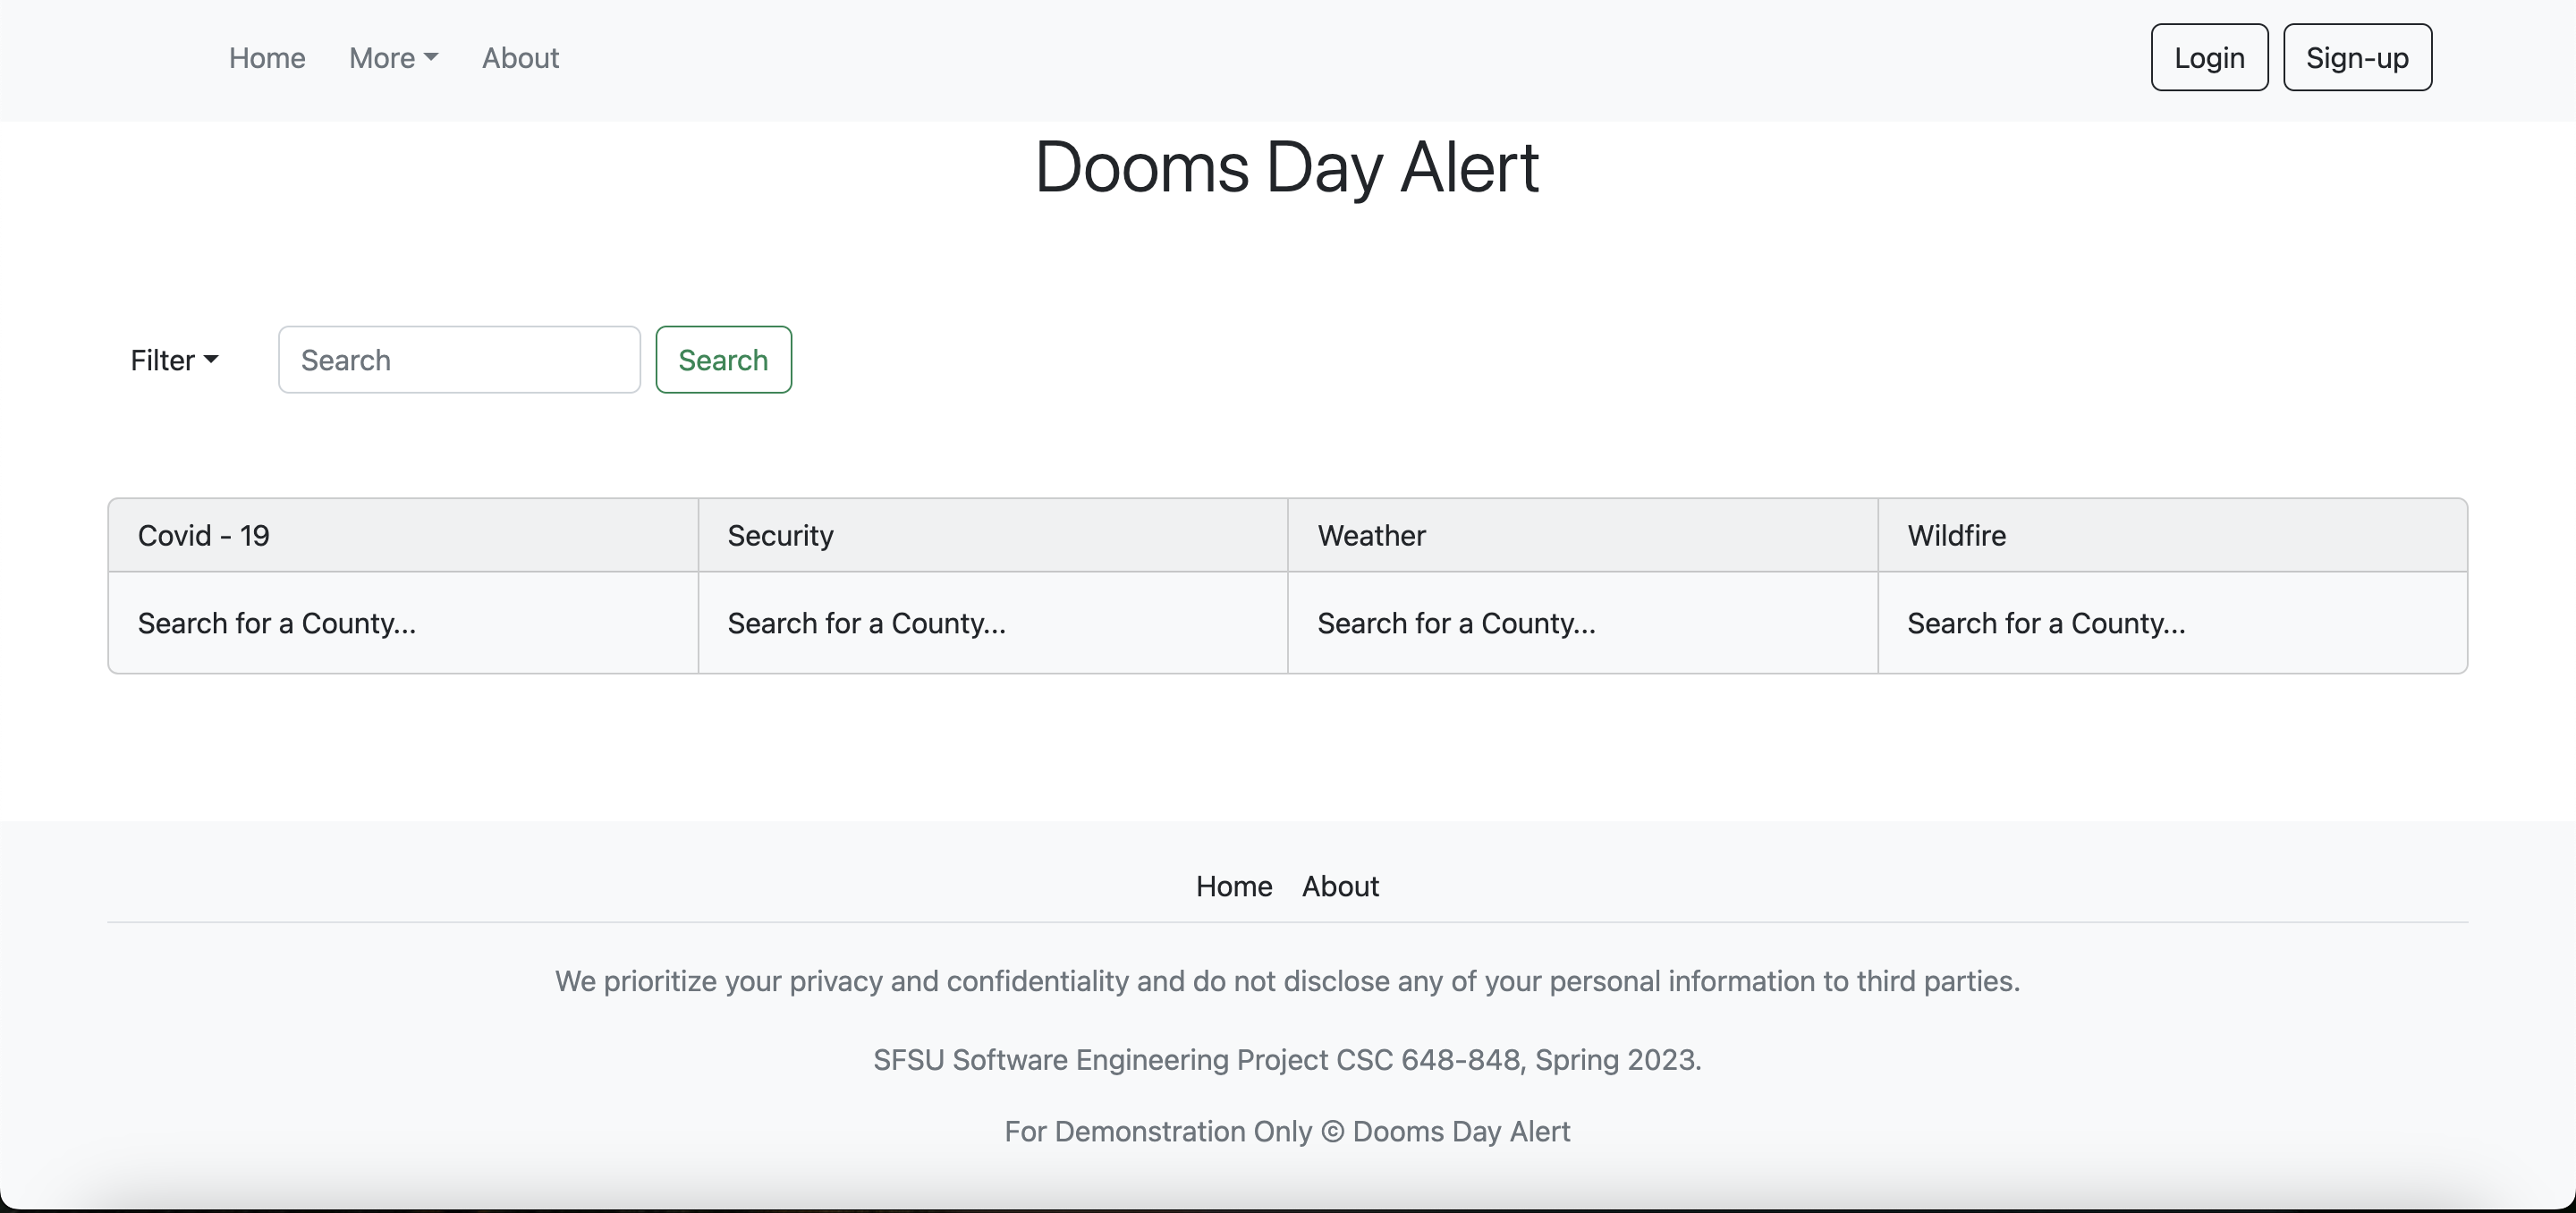 Dooms Day Alert